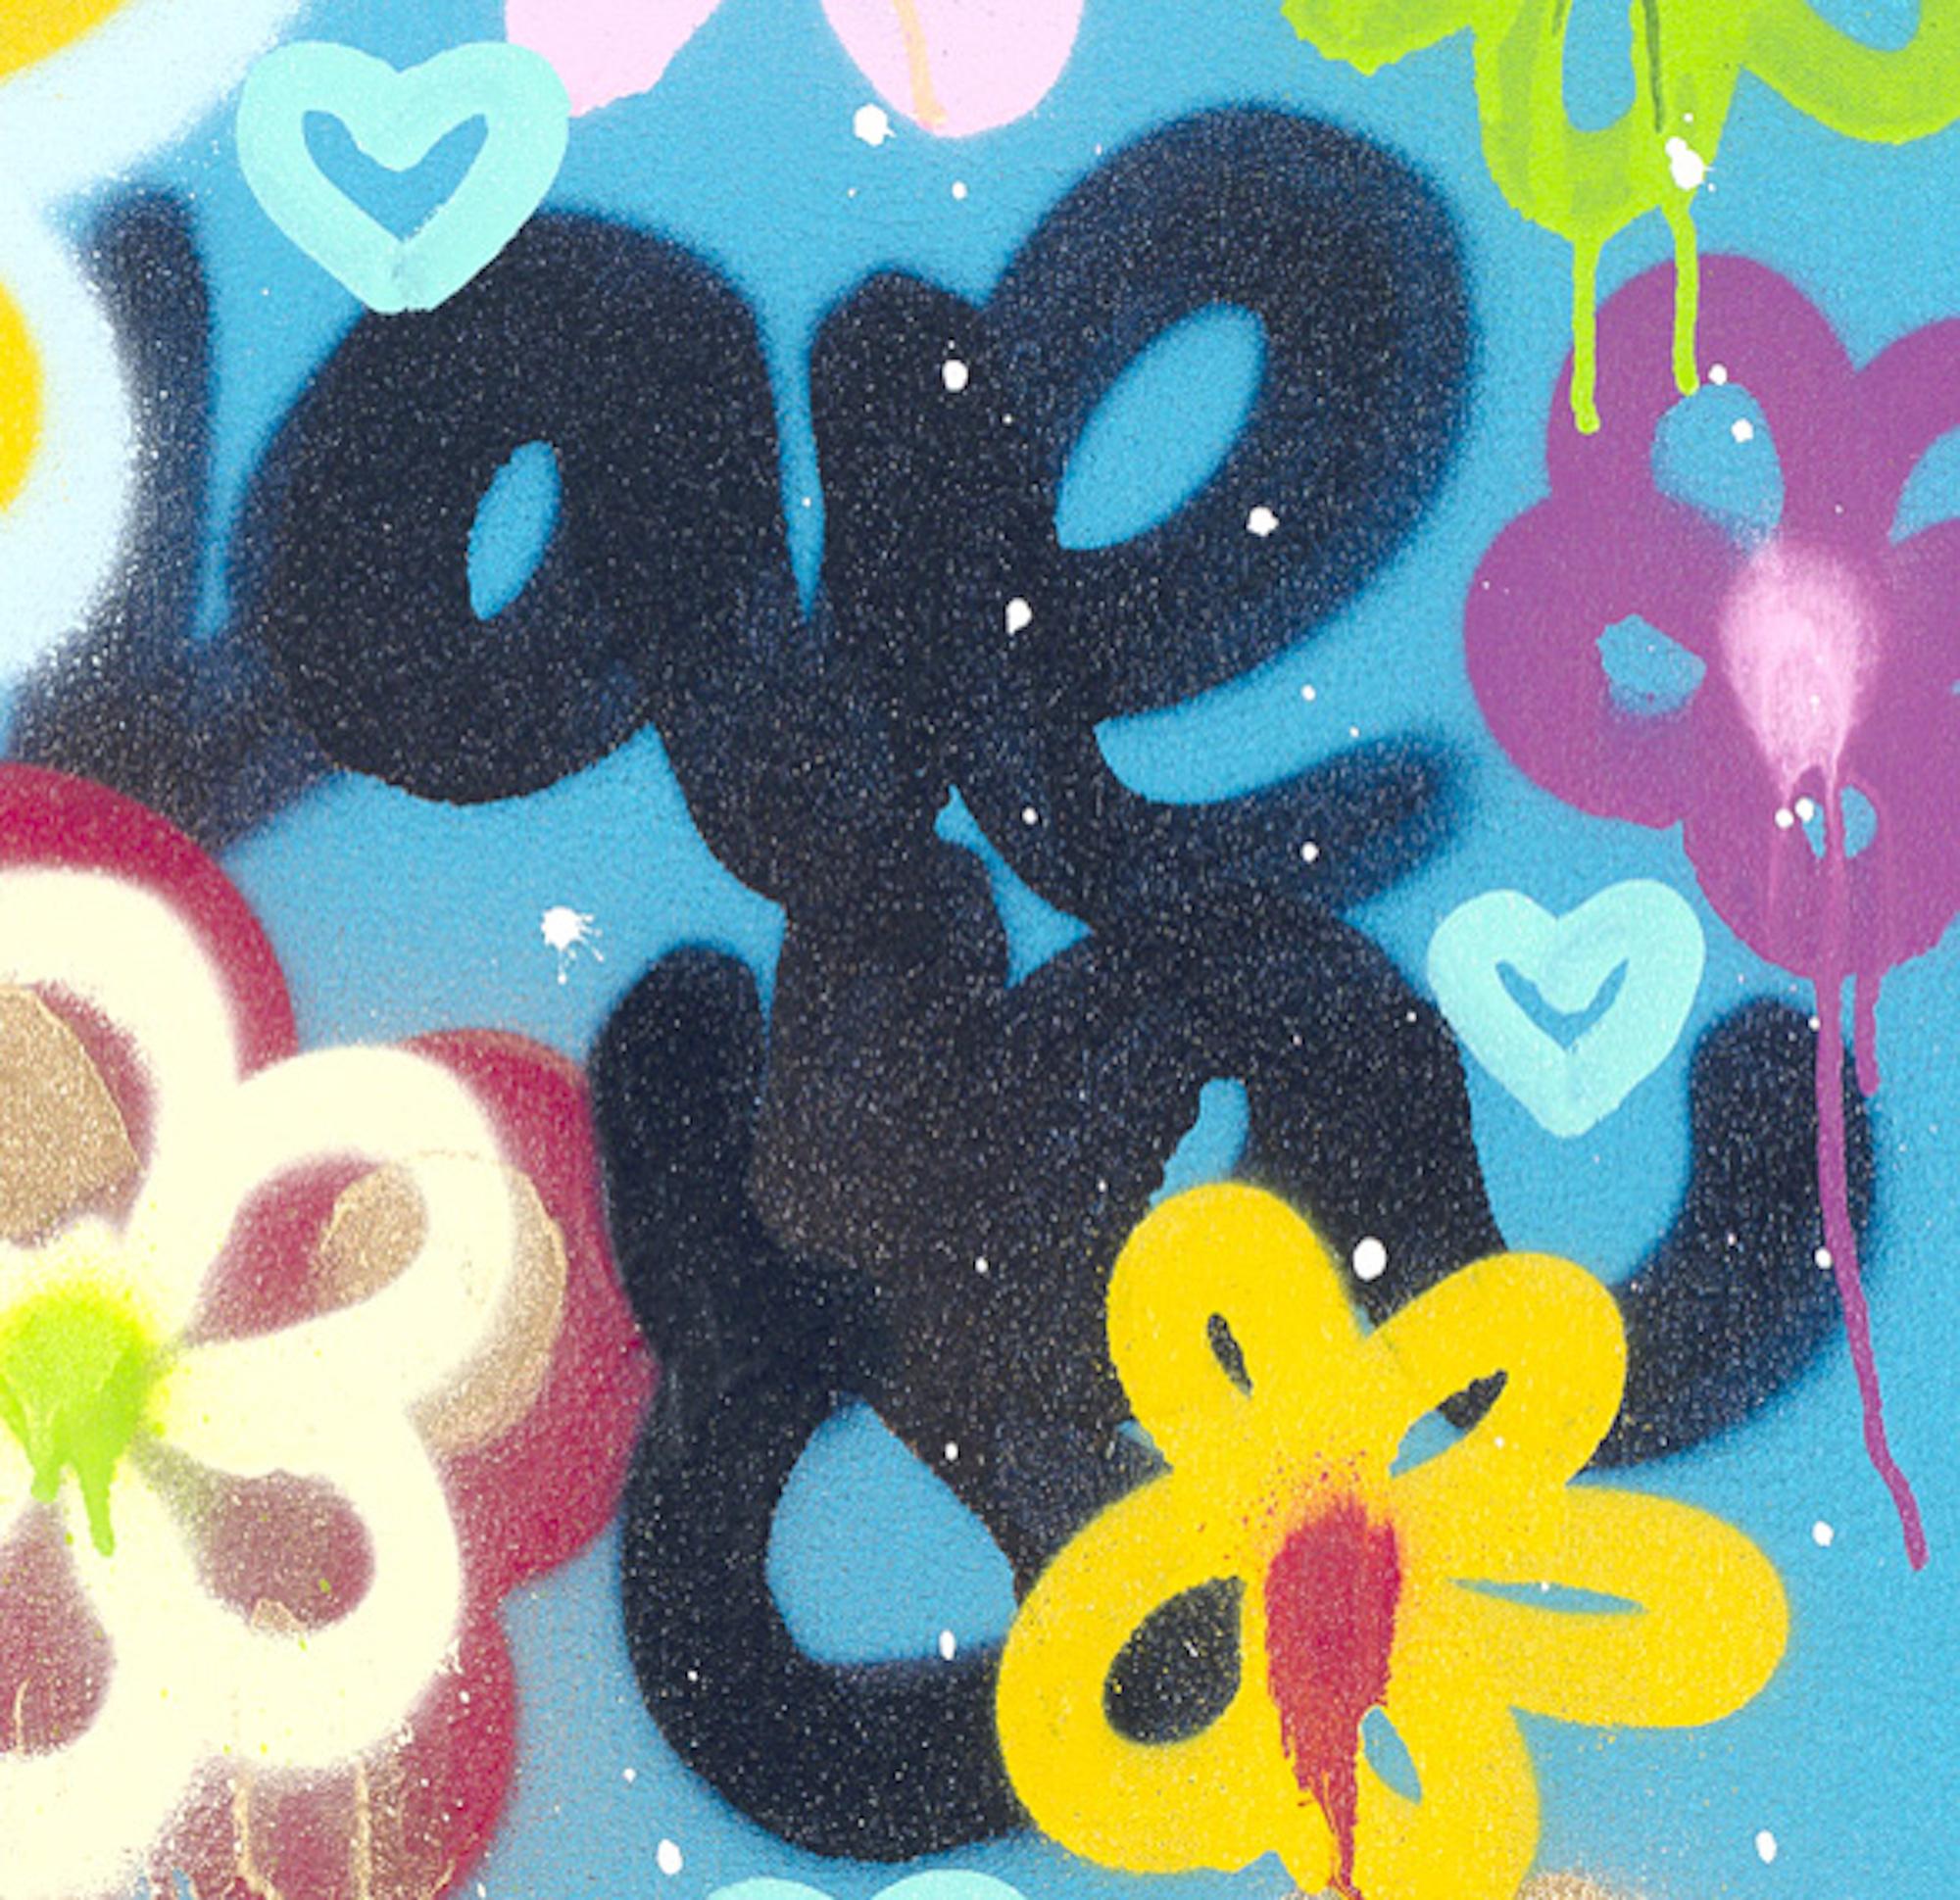 graffiti style flowers